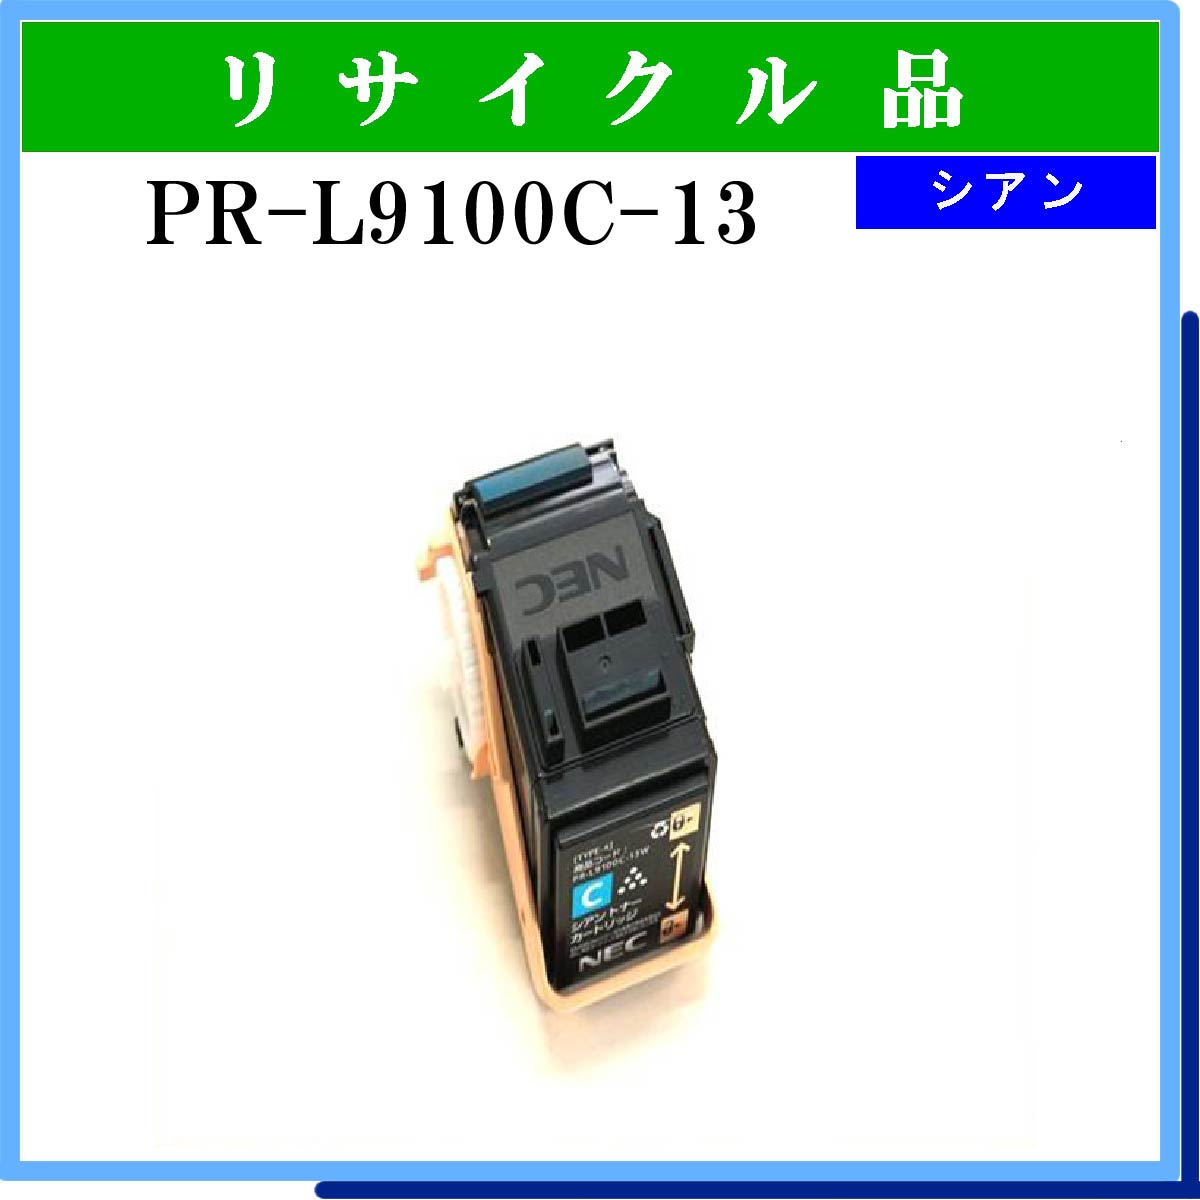 PR-L9100C-13